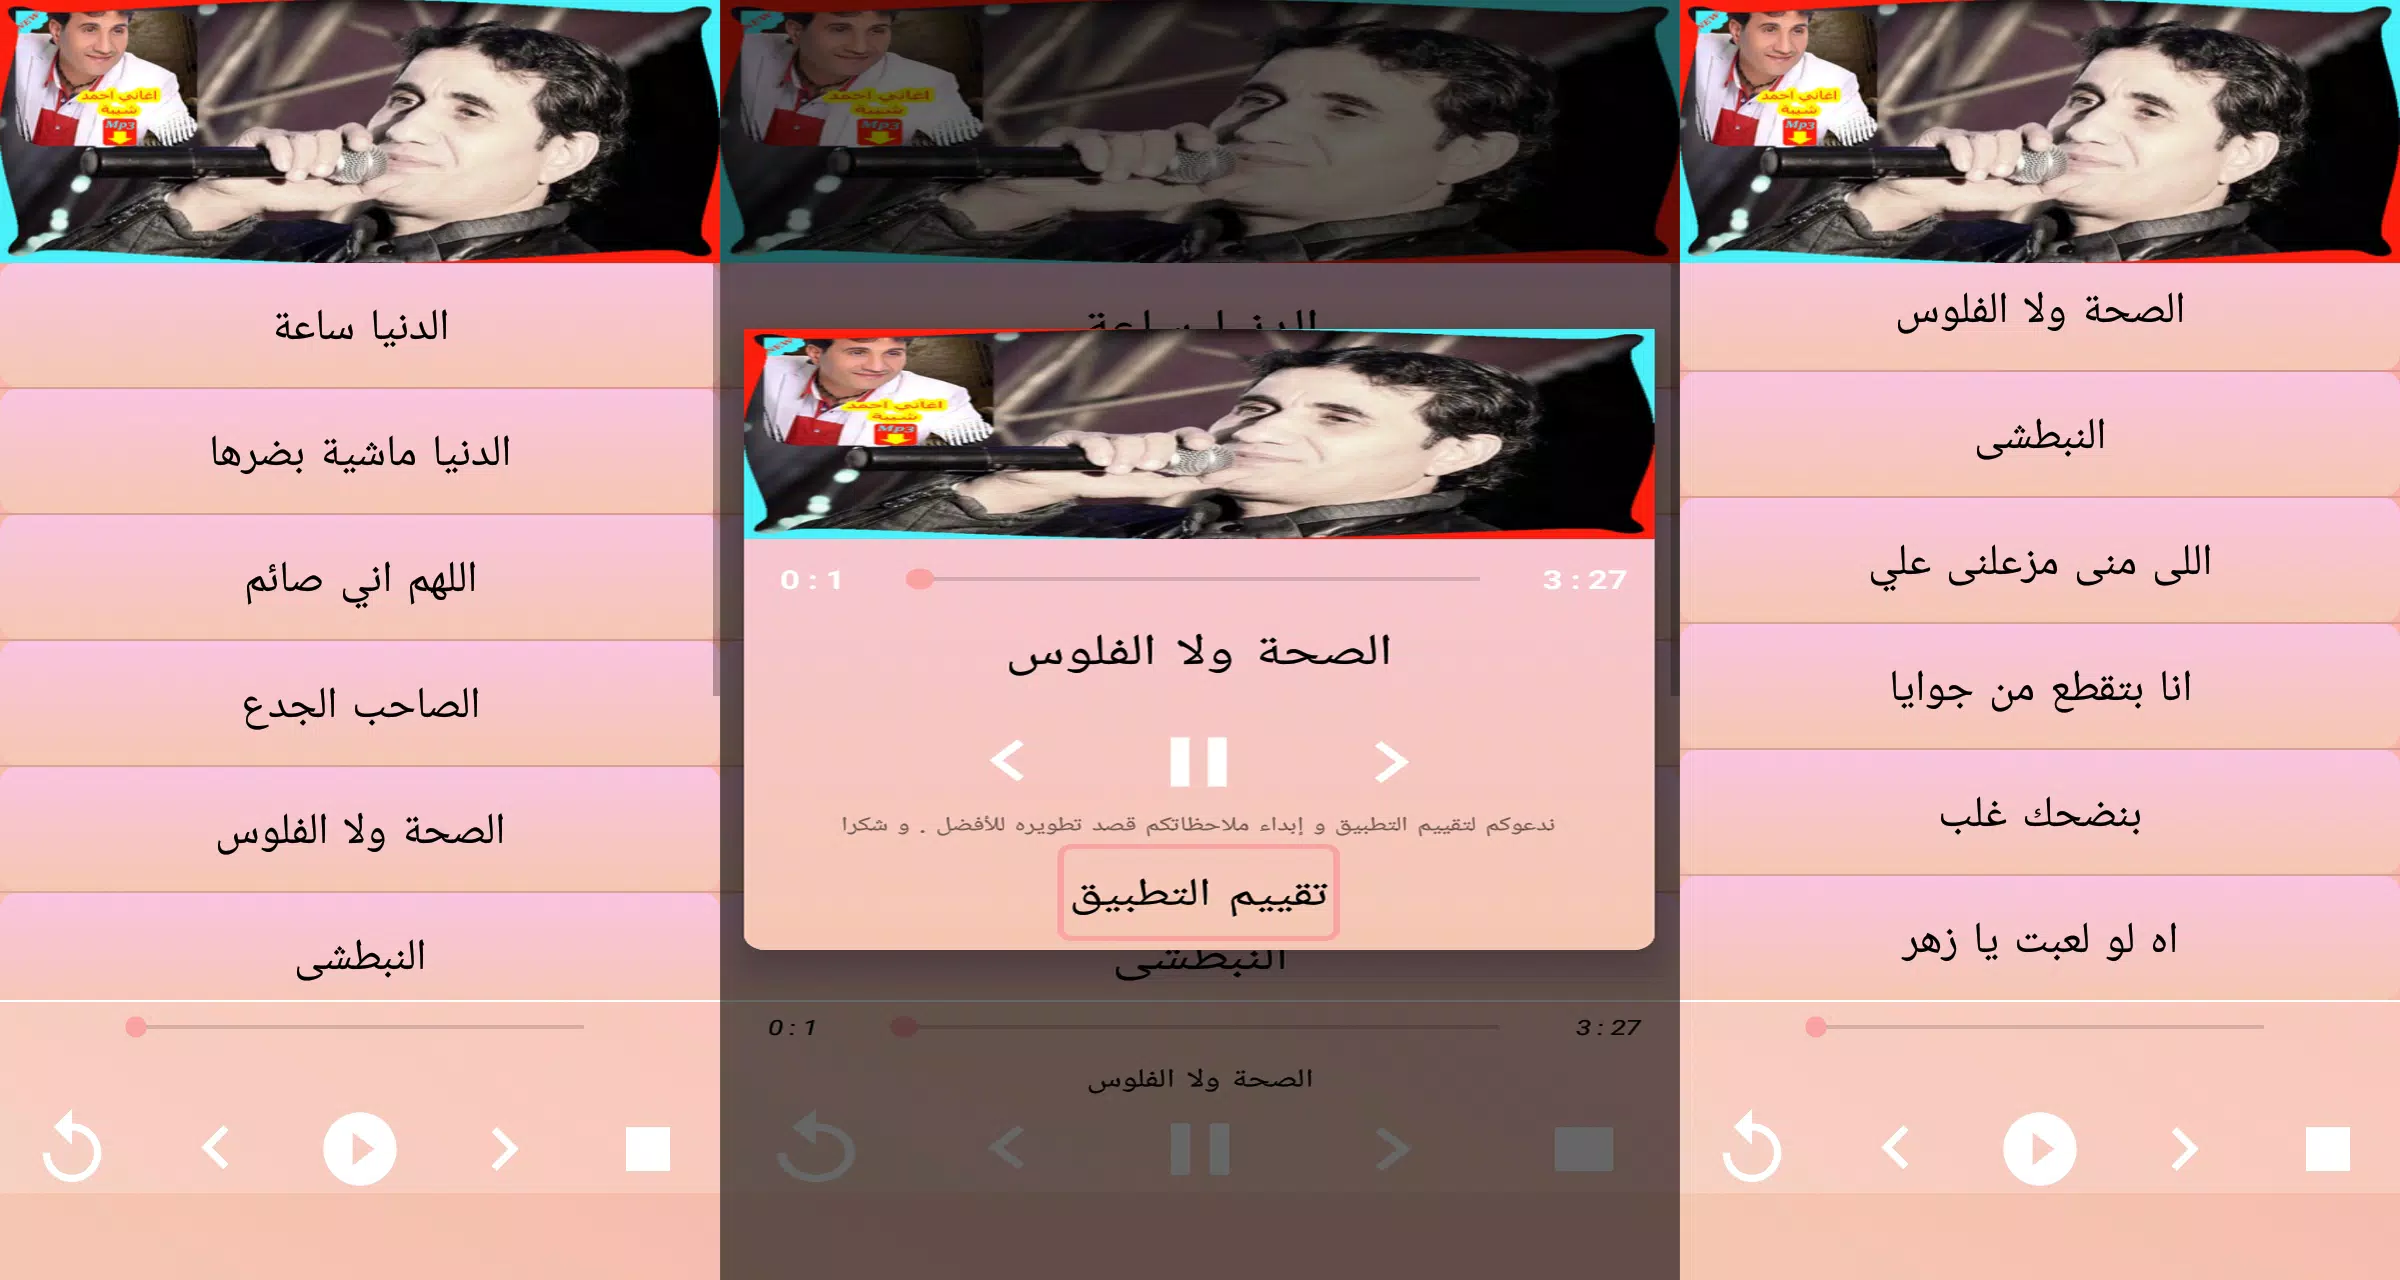 احمد شيبه اغنية يعلم ربنا من مسلسل نسر الصعيد APK pour Android Télécharger